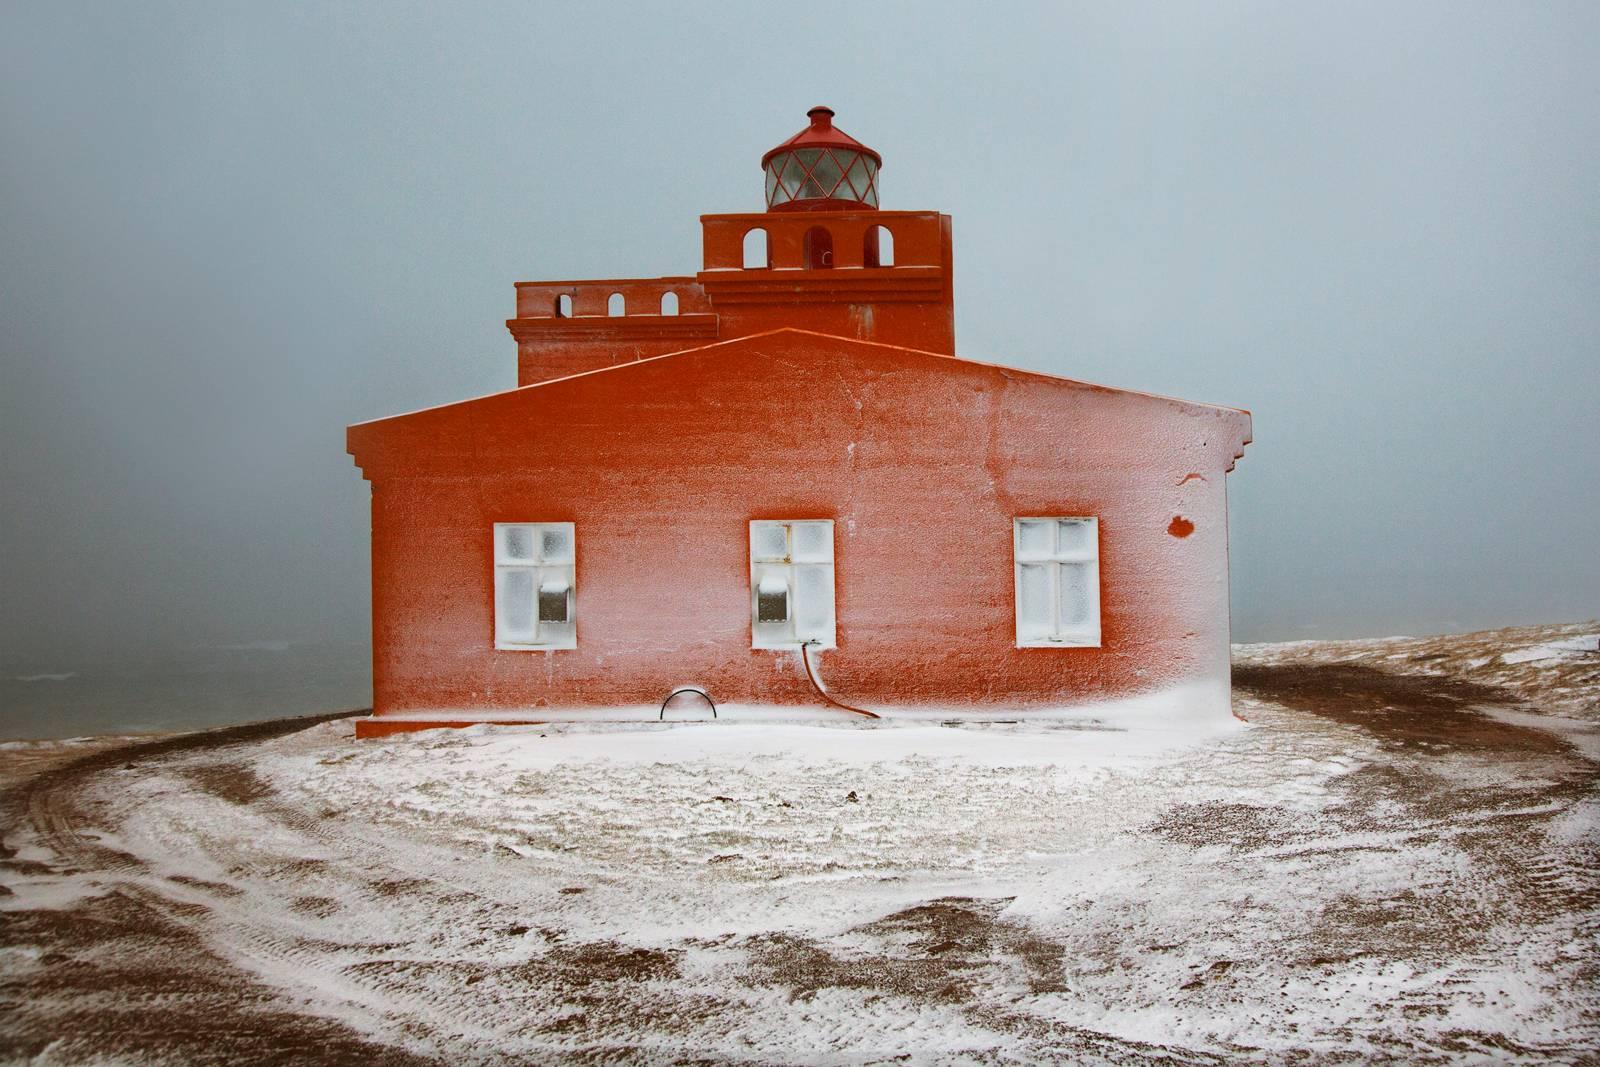 Lighthouse ist eine limitierte Auflage der Fotografie des französischen zeitgenössischen Künstlers Christophe Jacrot. 

Dieses Foto wird nur als ungerahmter Abzug verkauft. Sie ist in 2 Größen erhältlich:
*60 cm × 90 cm (23,6" × 35,4"), Auflage: 12